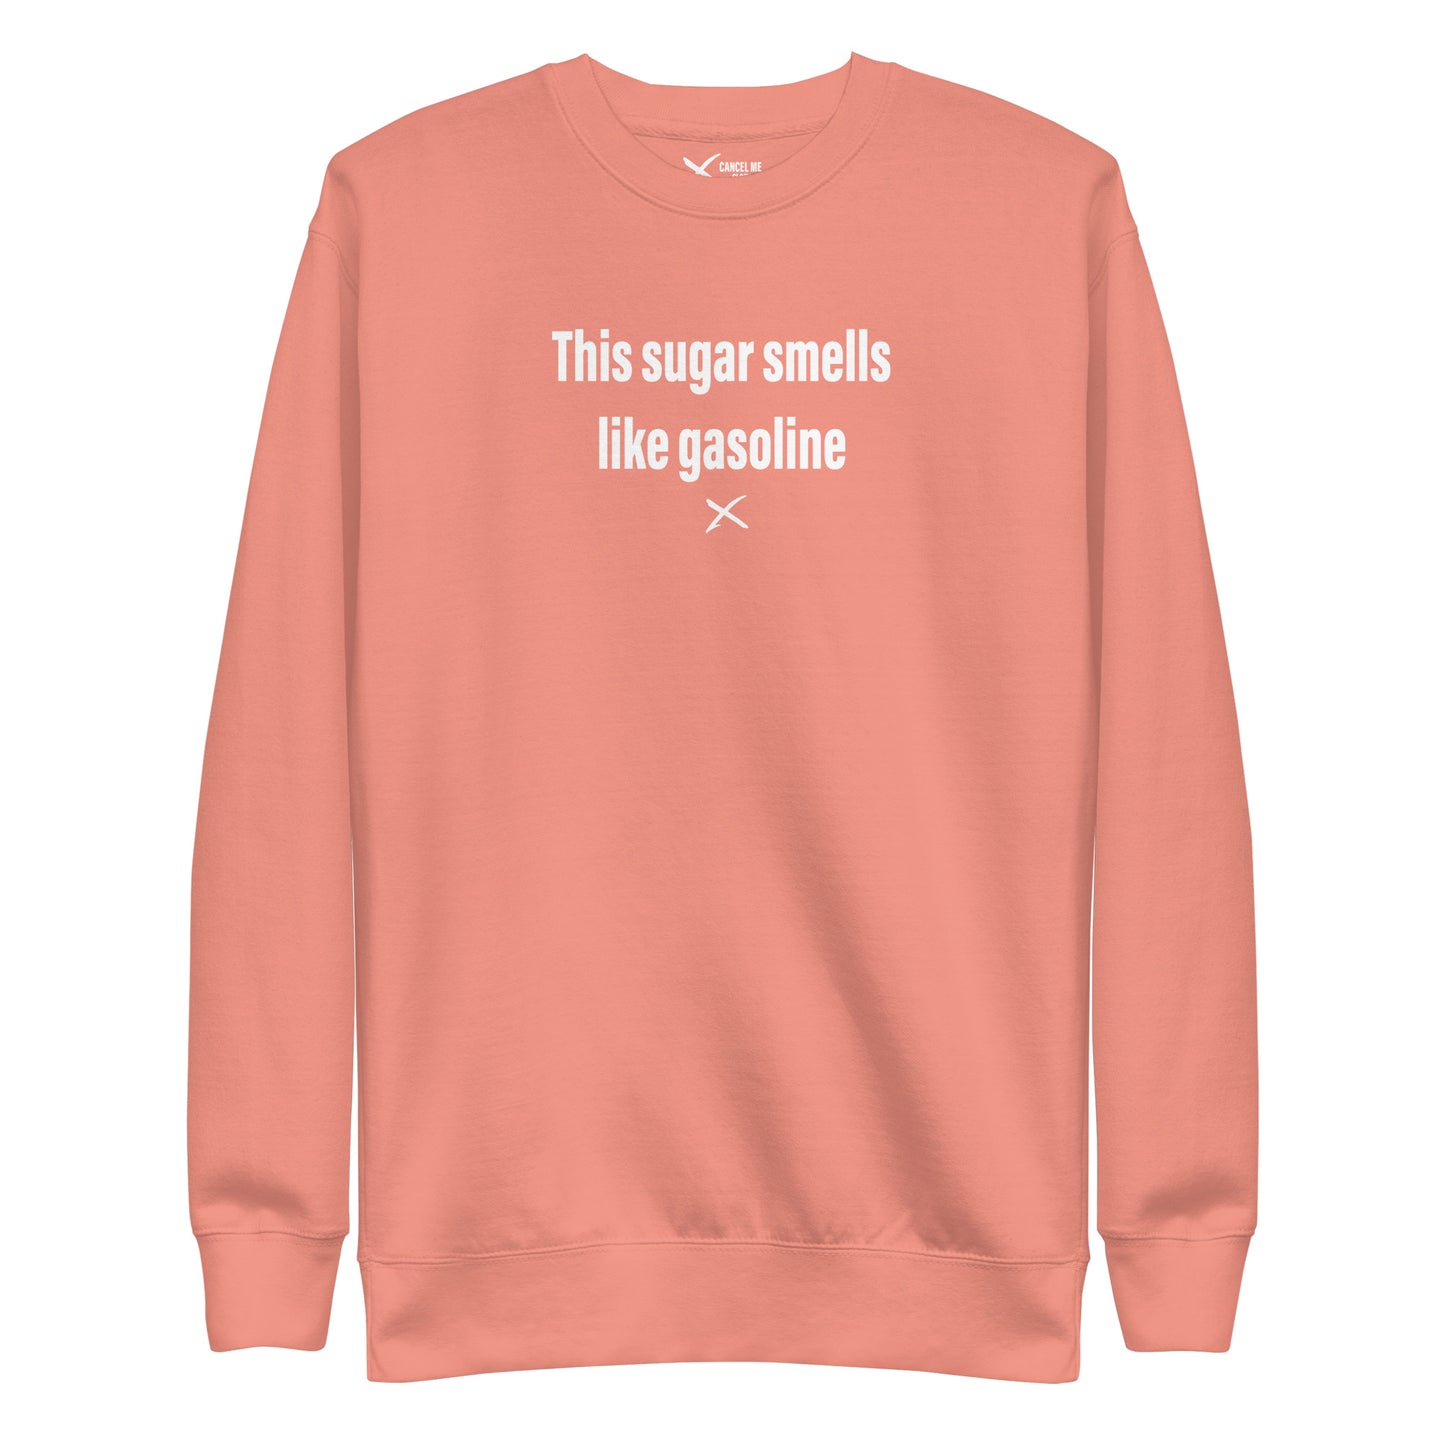 This sugar smells like gasoline - Sweatshirt